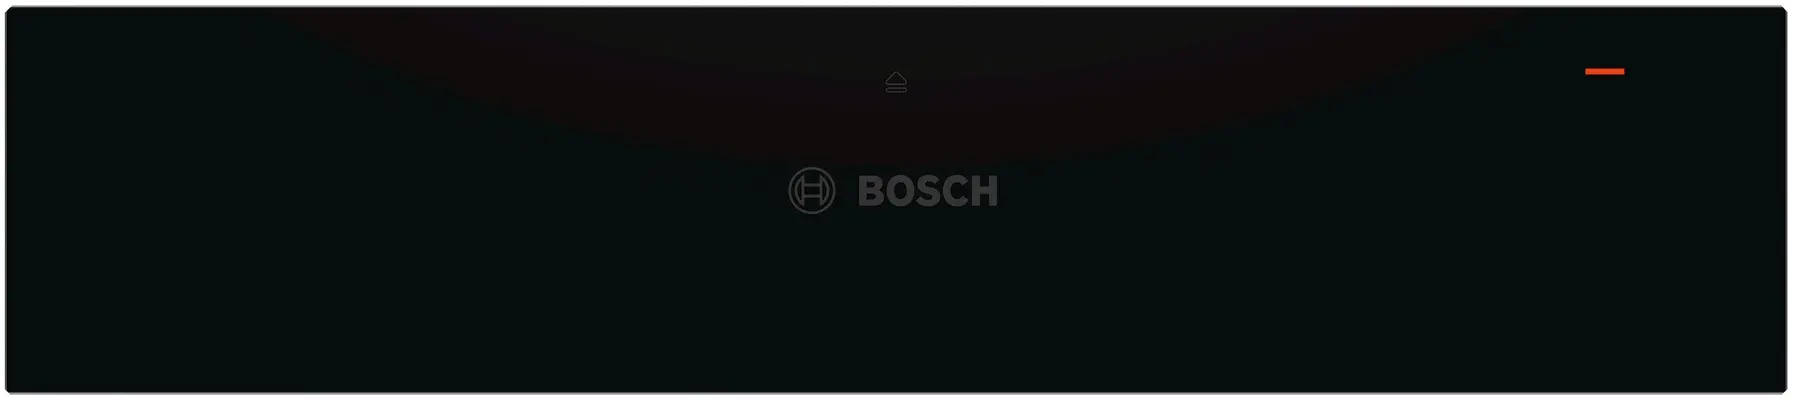 BIC830NC0-Bosch-Warmhoudlades